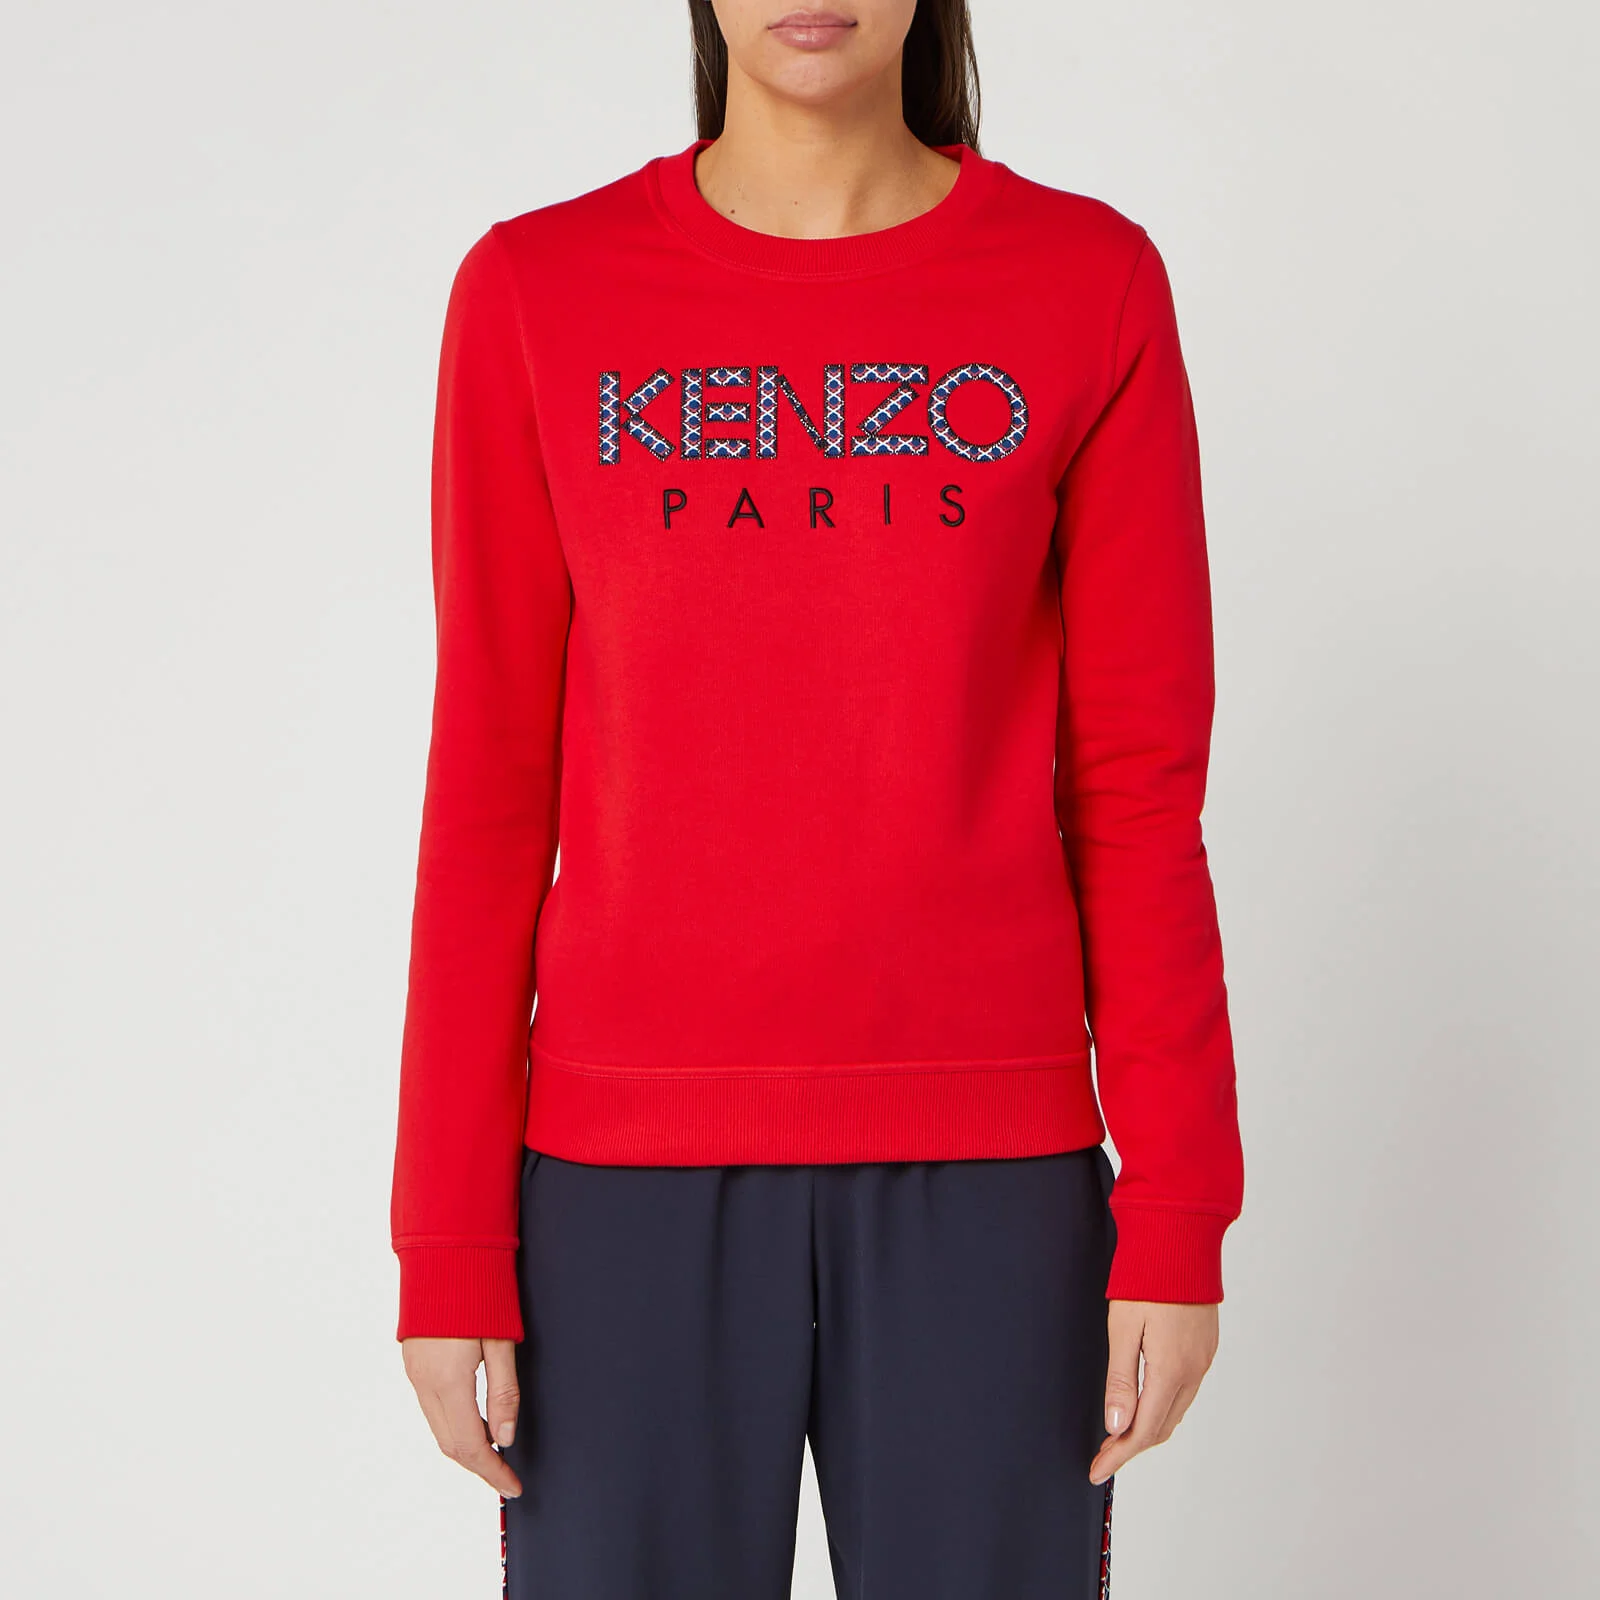 KENZO Women's Classic Sweatshirt Kenzo Paris - Medium Red Image 1